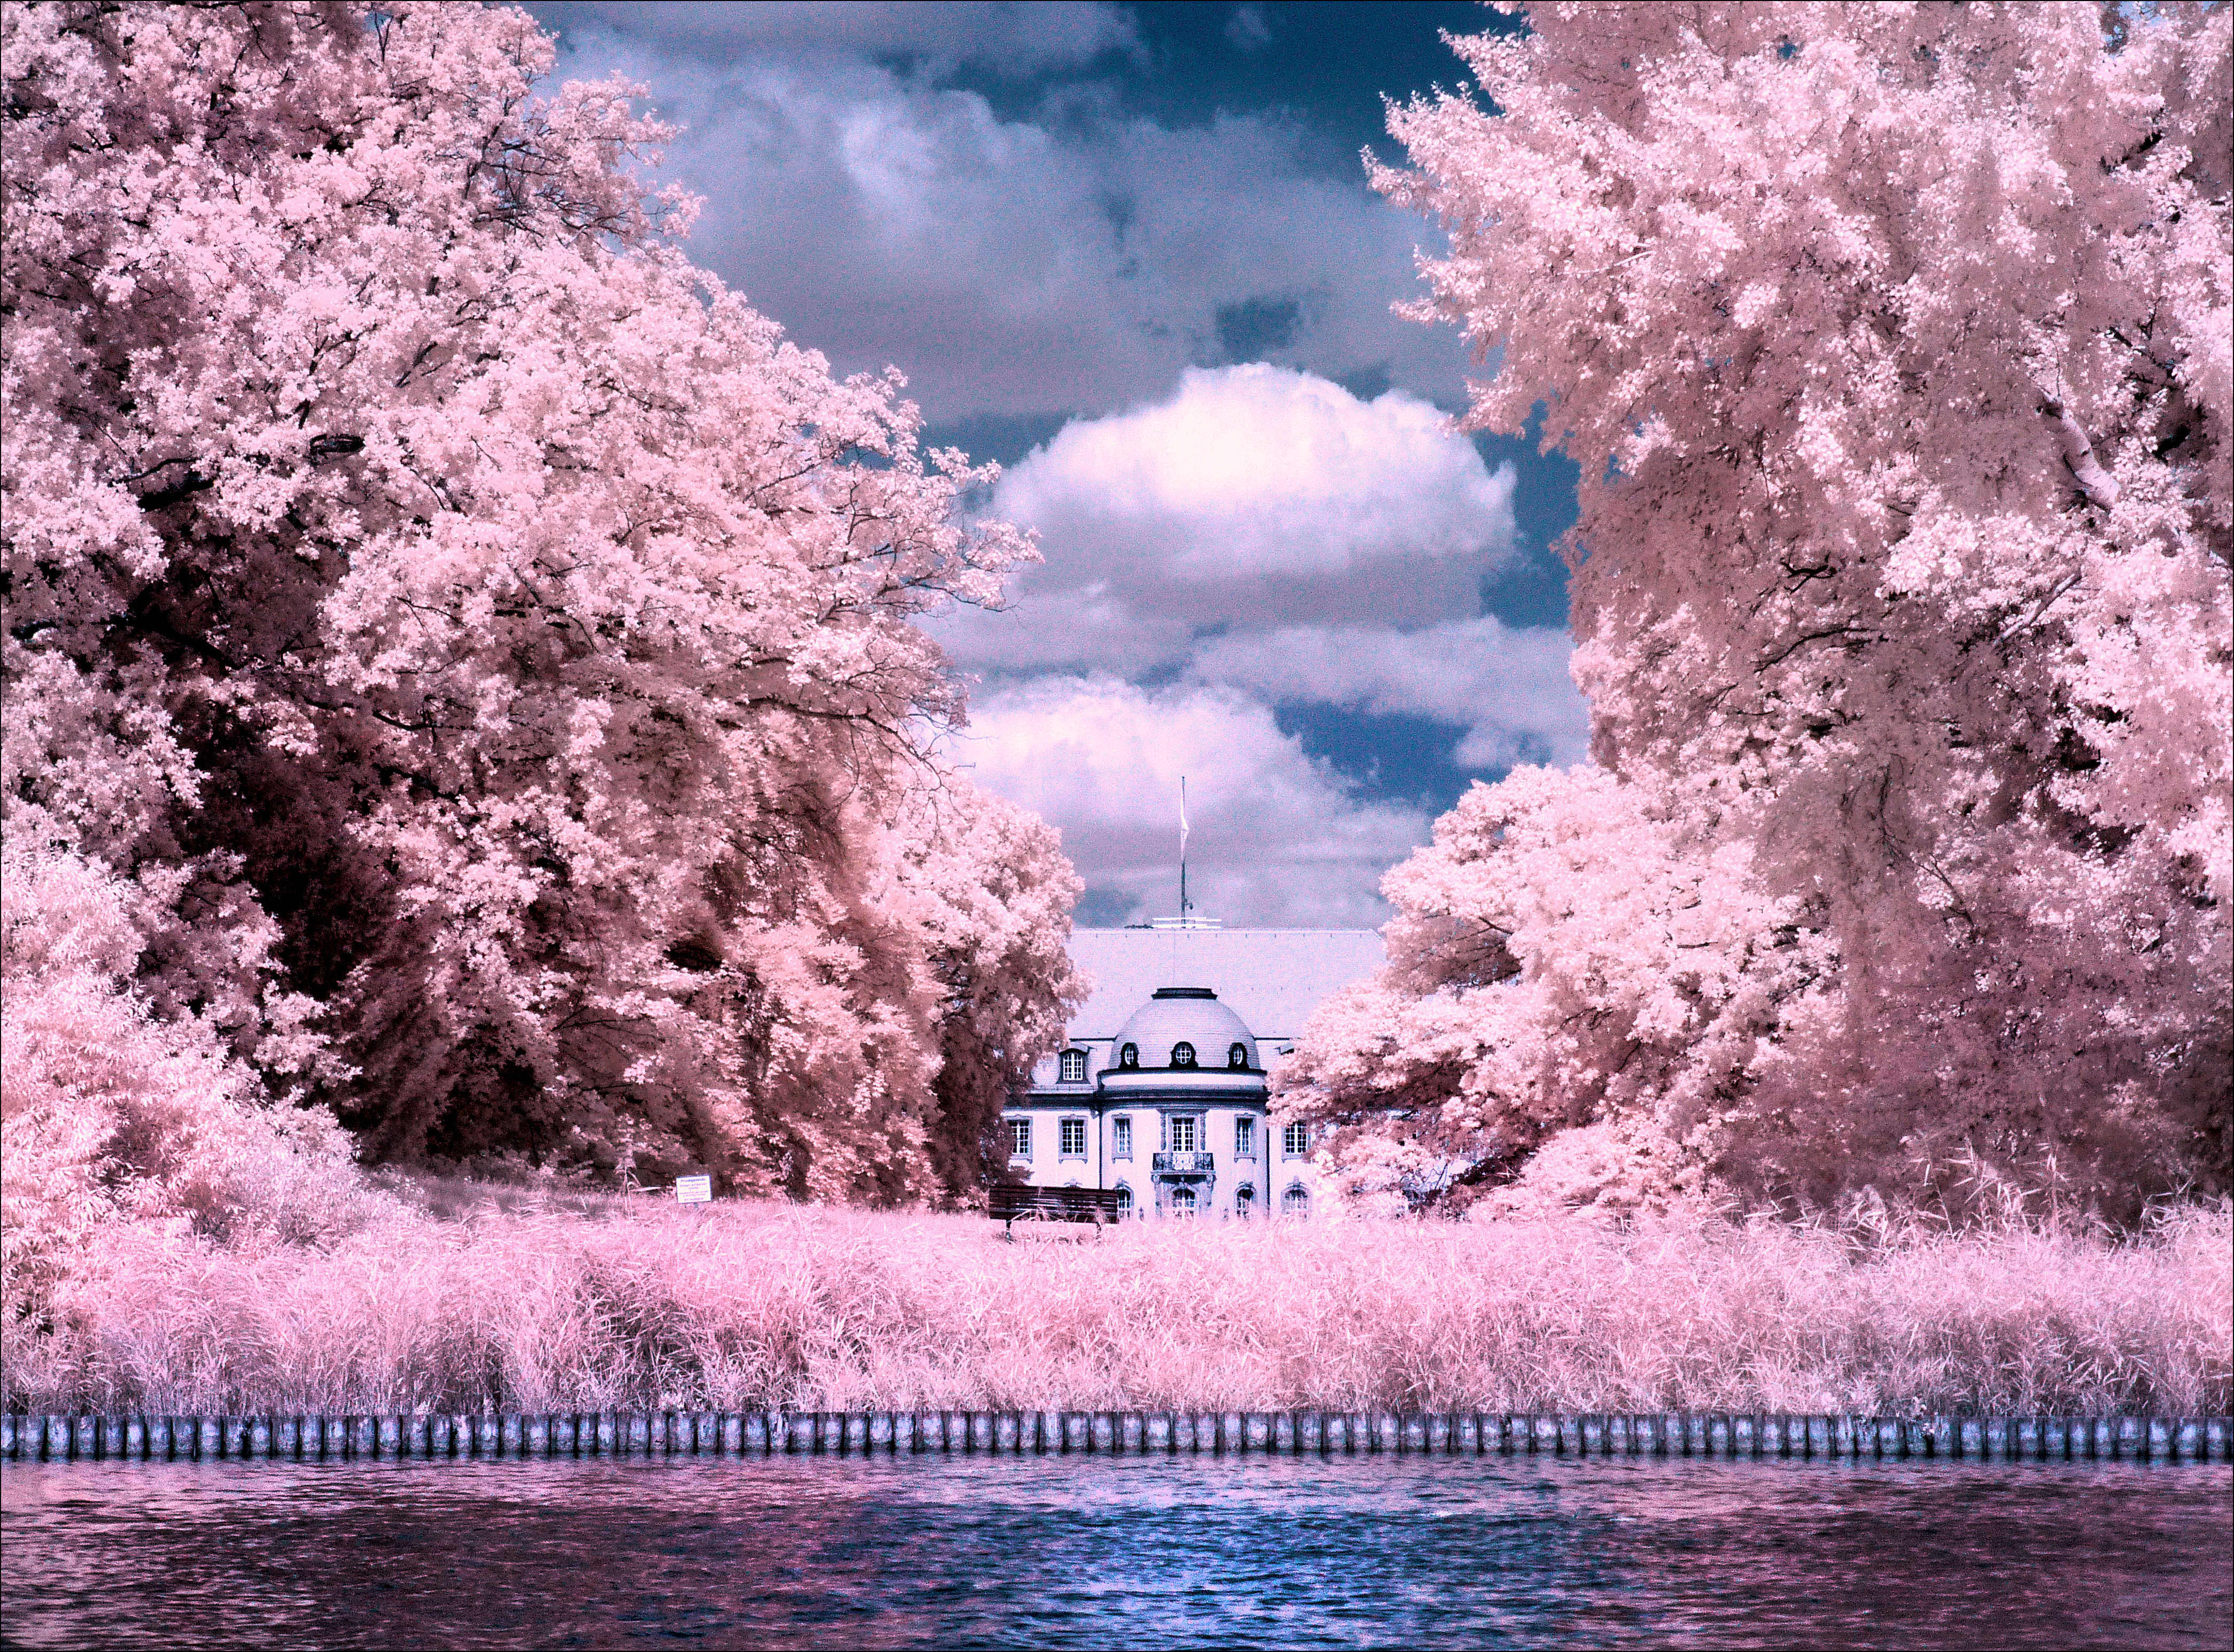 Villa Borsig Berlin Tegeler See infrared